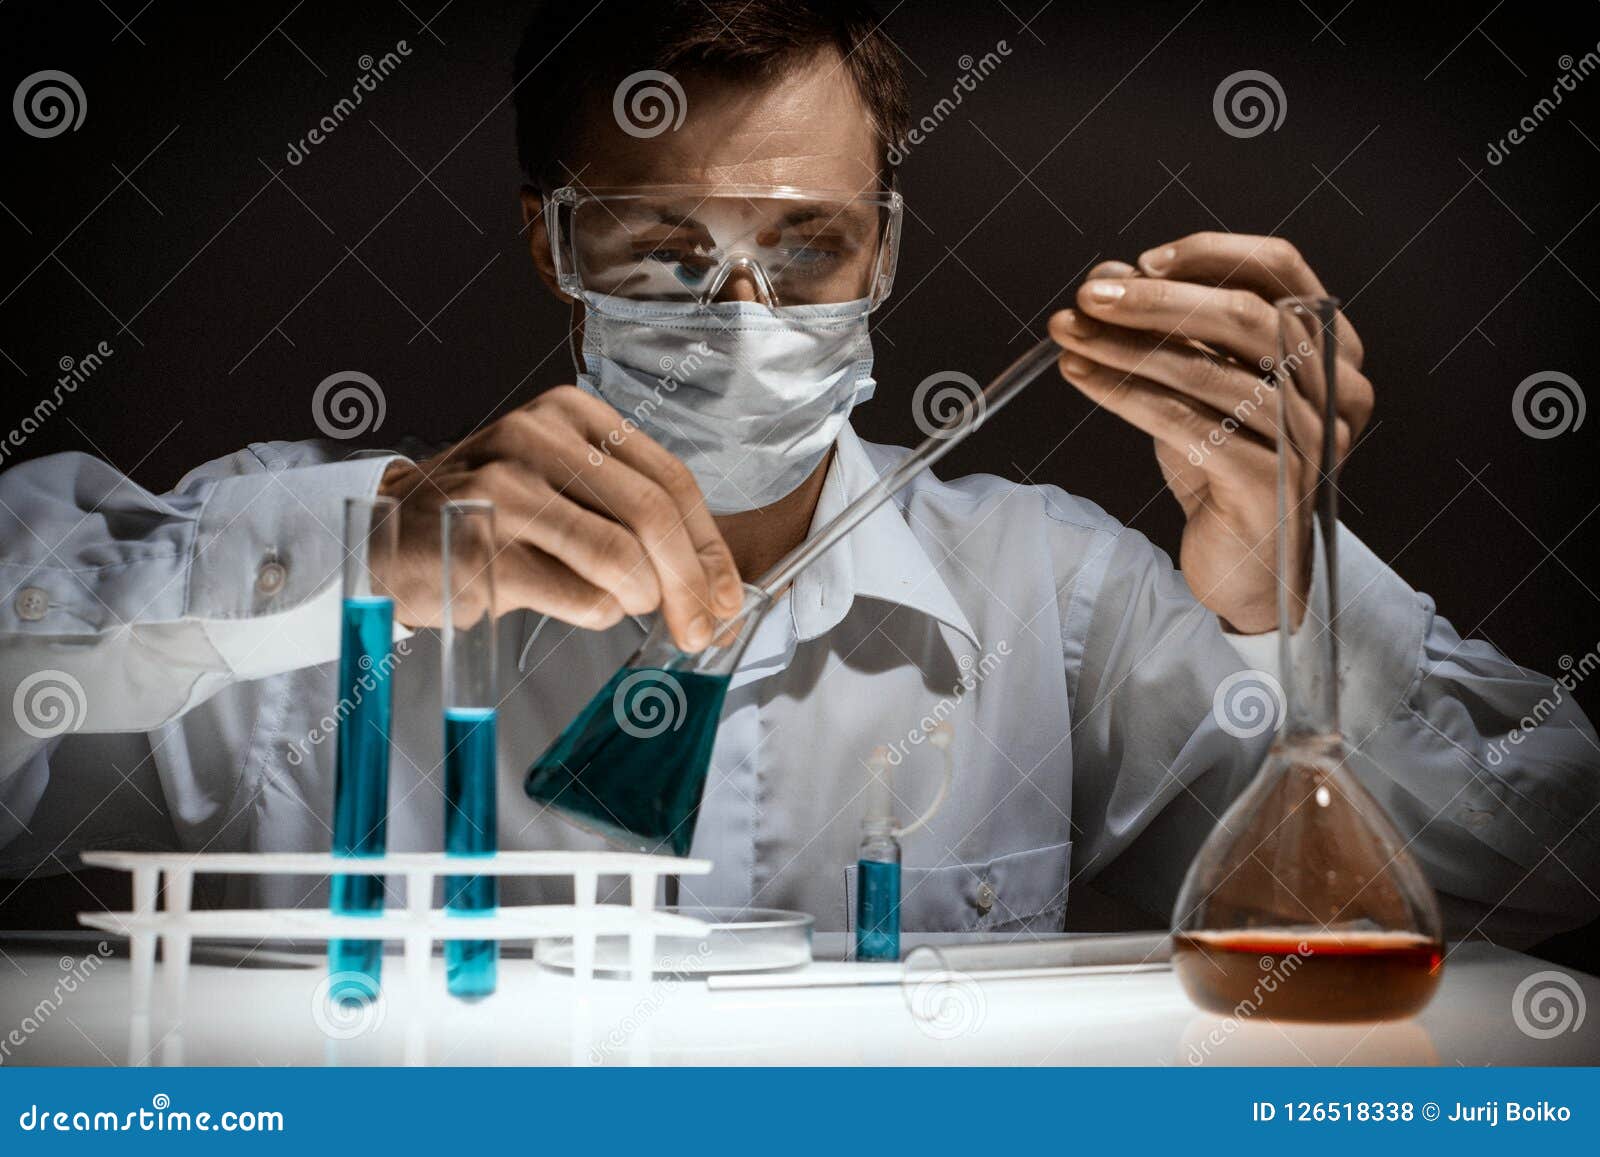 Ученые свои результаты исследования. Ученый с колбой. Ученый с колбами в лаборатории. Человек в колбе. Химик с колбой в руках.